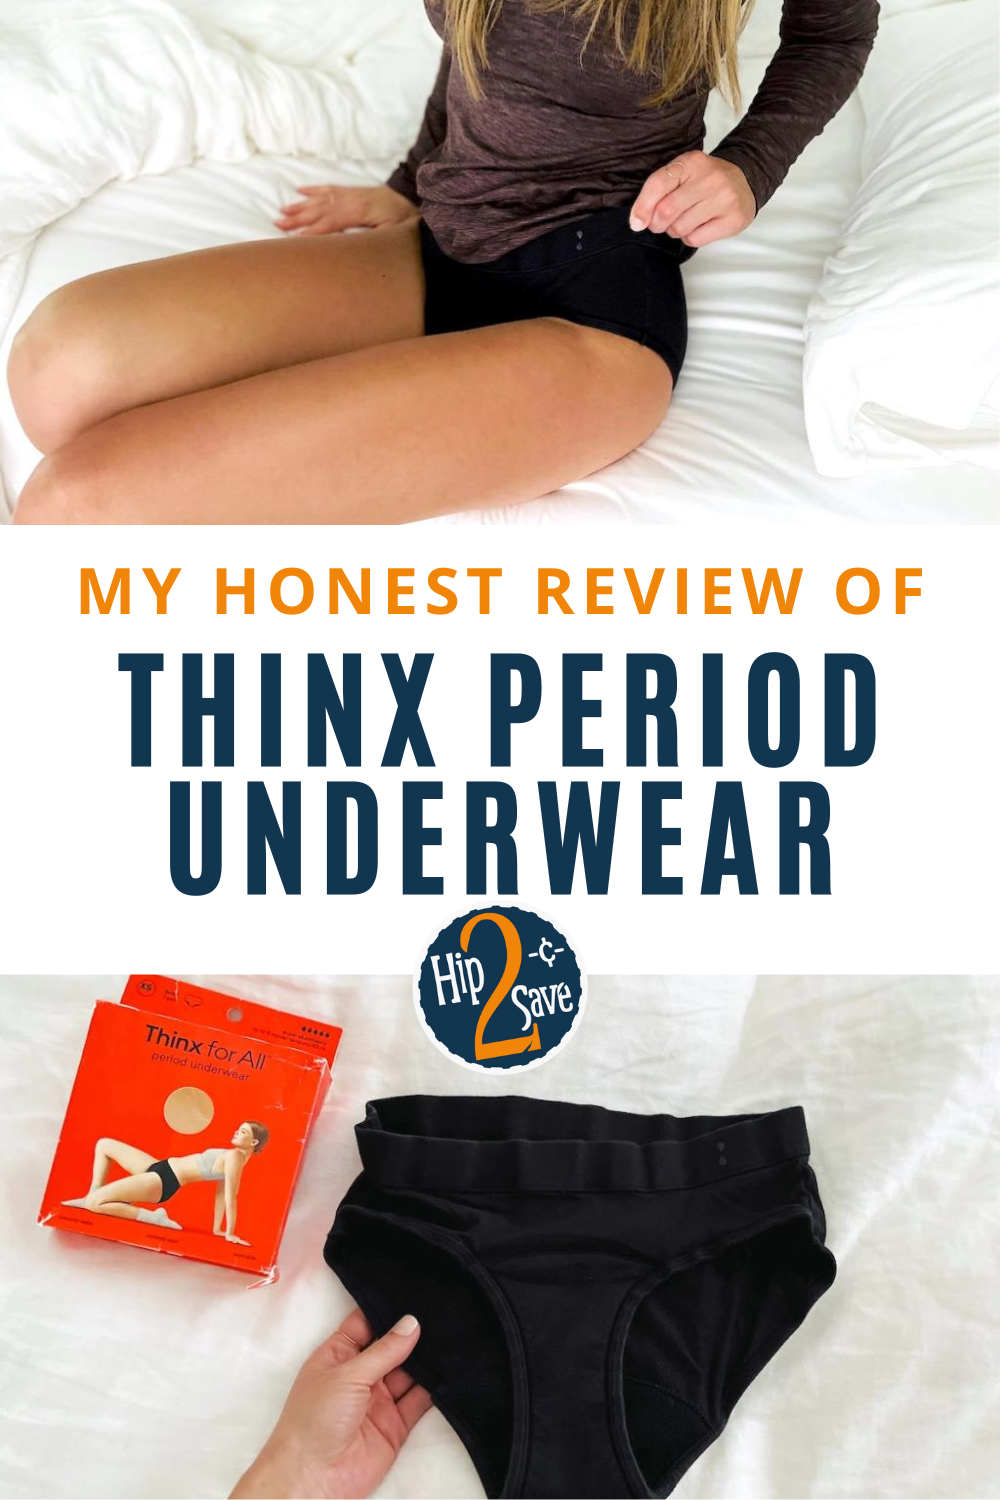 My Honest Review of Thinx Period Underwear